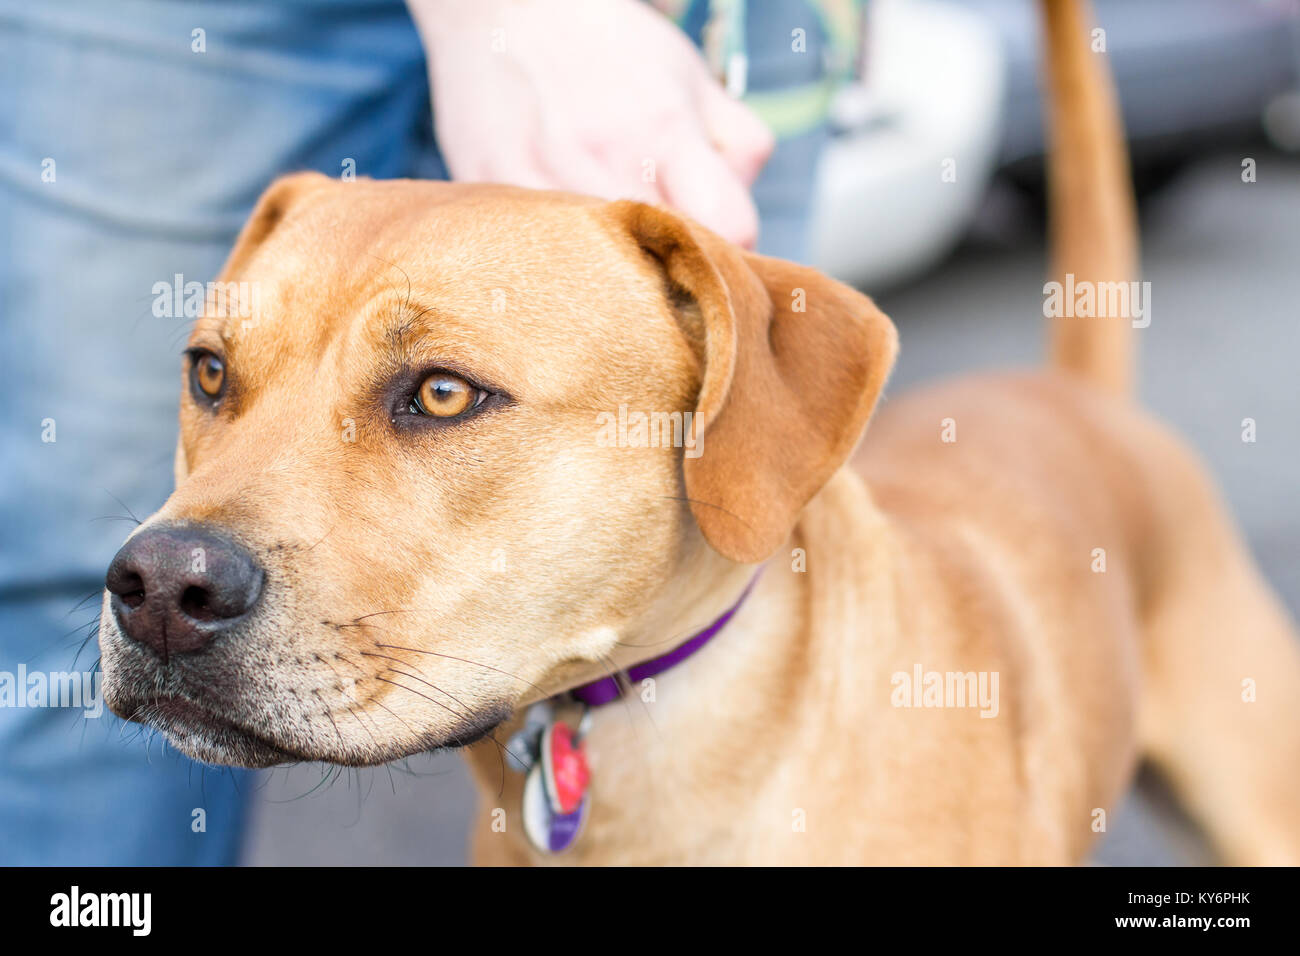 Junge athletischer Hund Ziehen an der Leine auf einer Straße mit Autos im Hintergrund Stockfoto